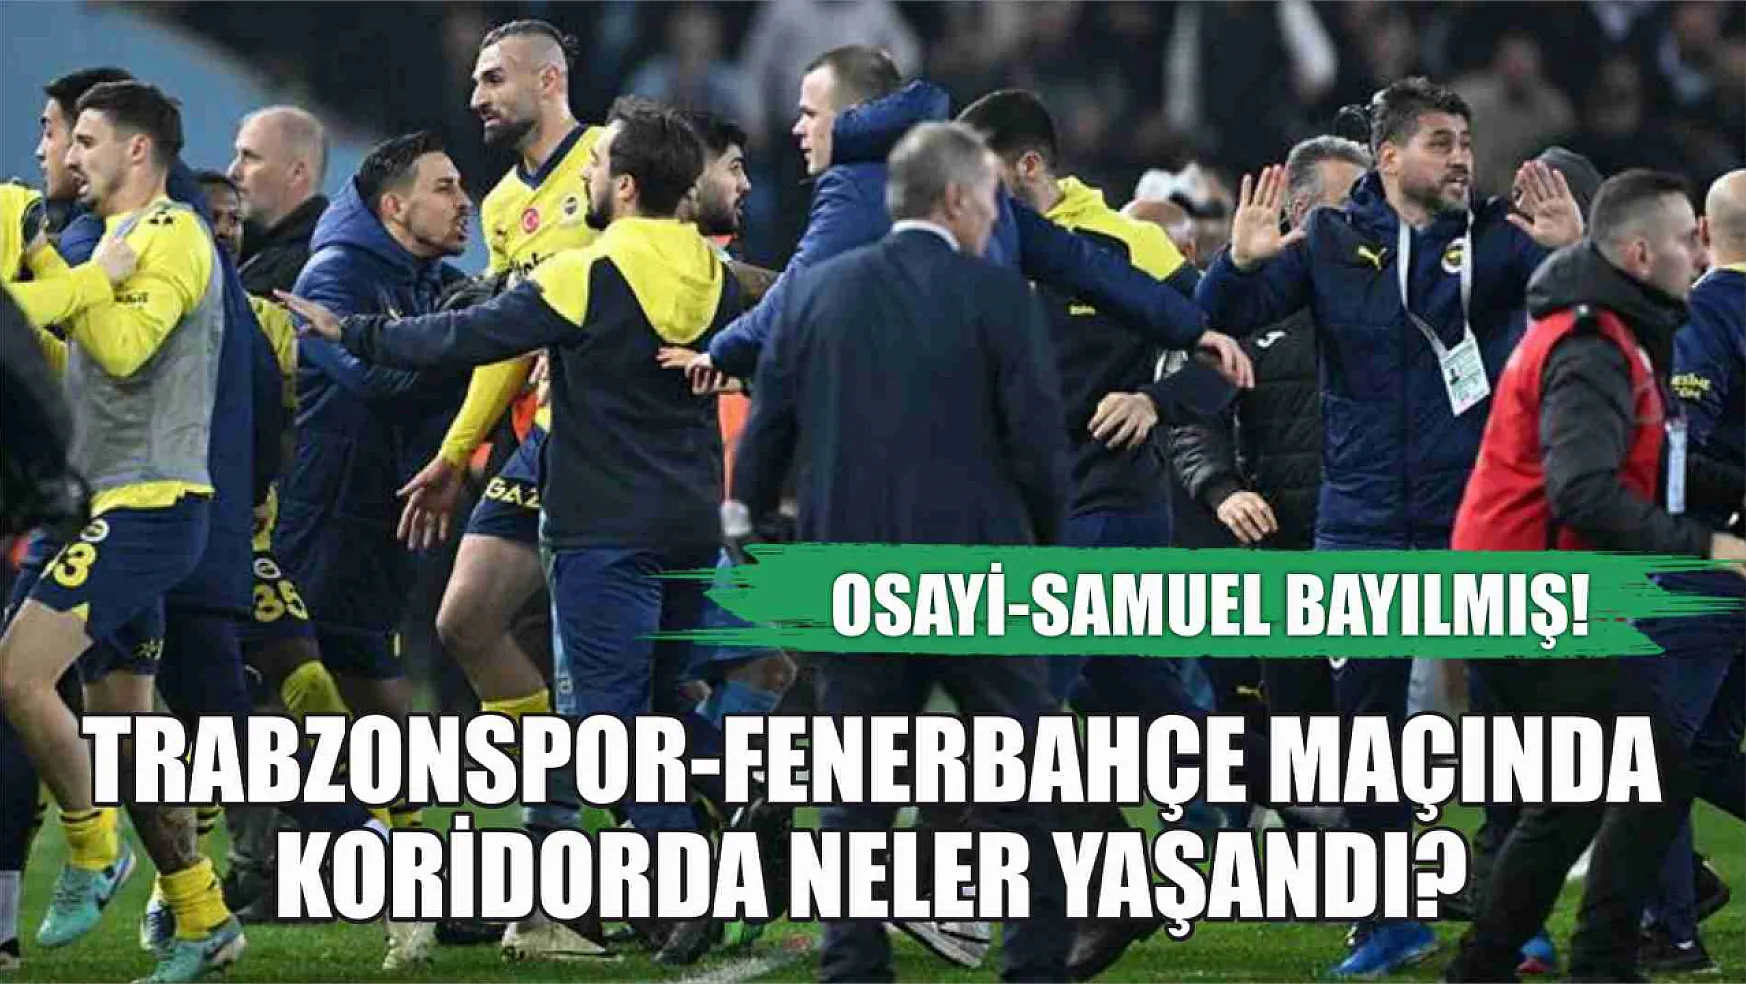 Trabzonspor-Fenerbahçe Maçında Koridorda Neler Yaşandı? Osayi-Samuel Bayılmış!